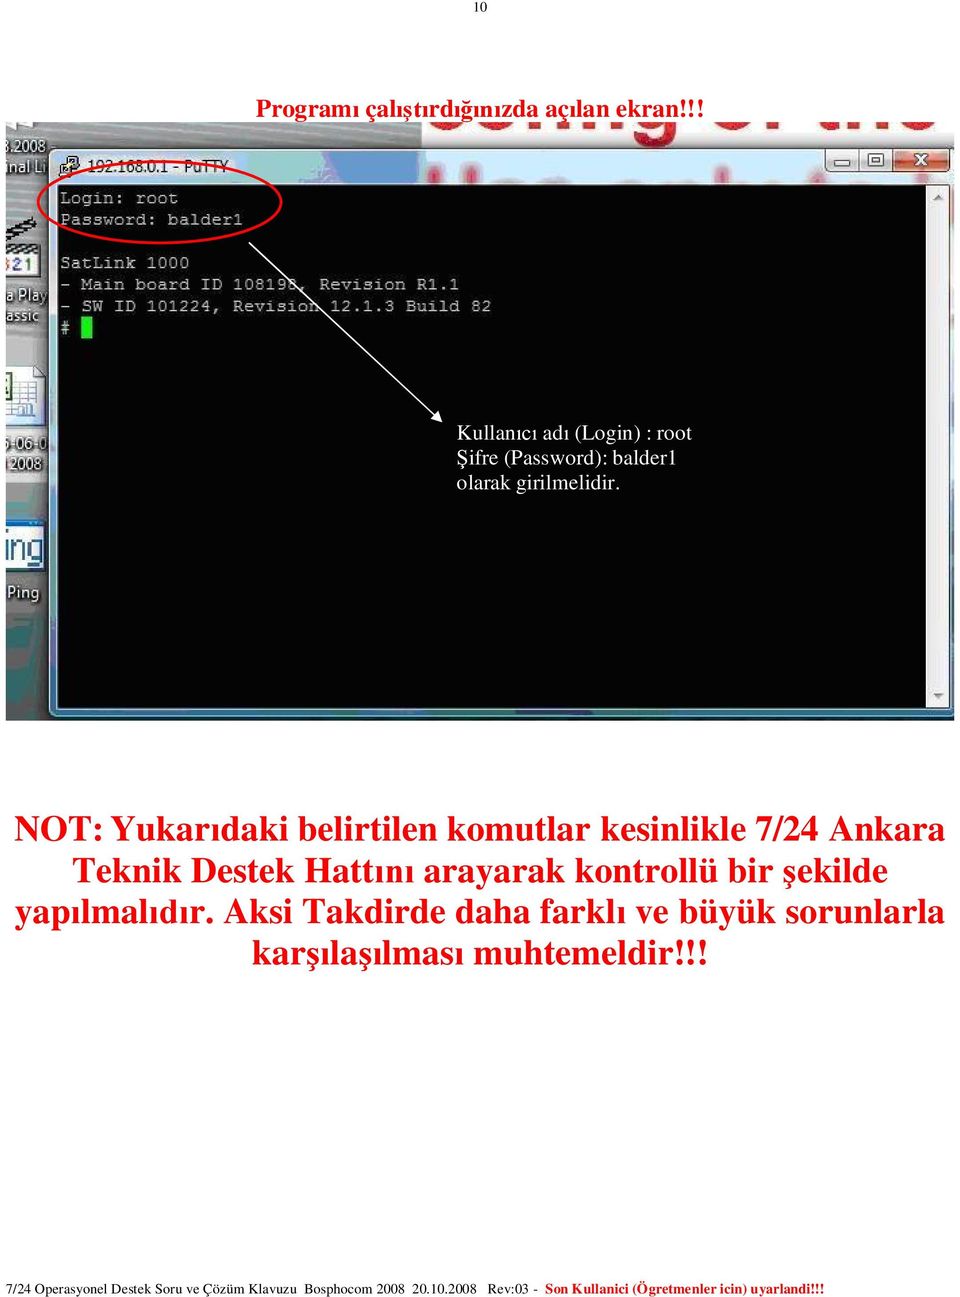 NOT: Yukar daki belirtilen komutlar kesinlikle 7/24 Ankara Teknik Destek